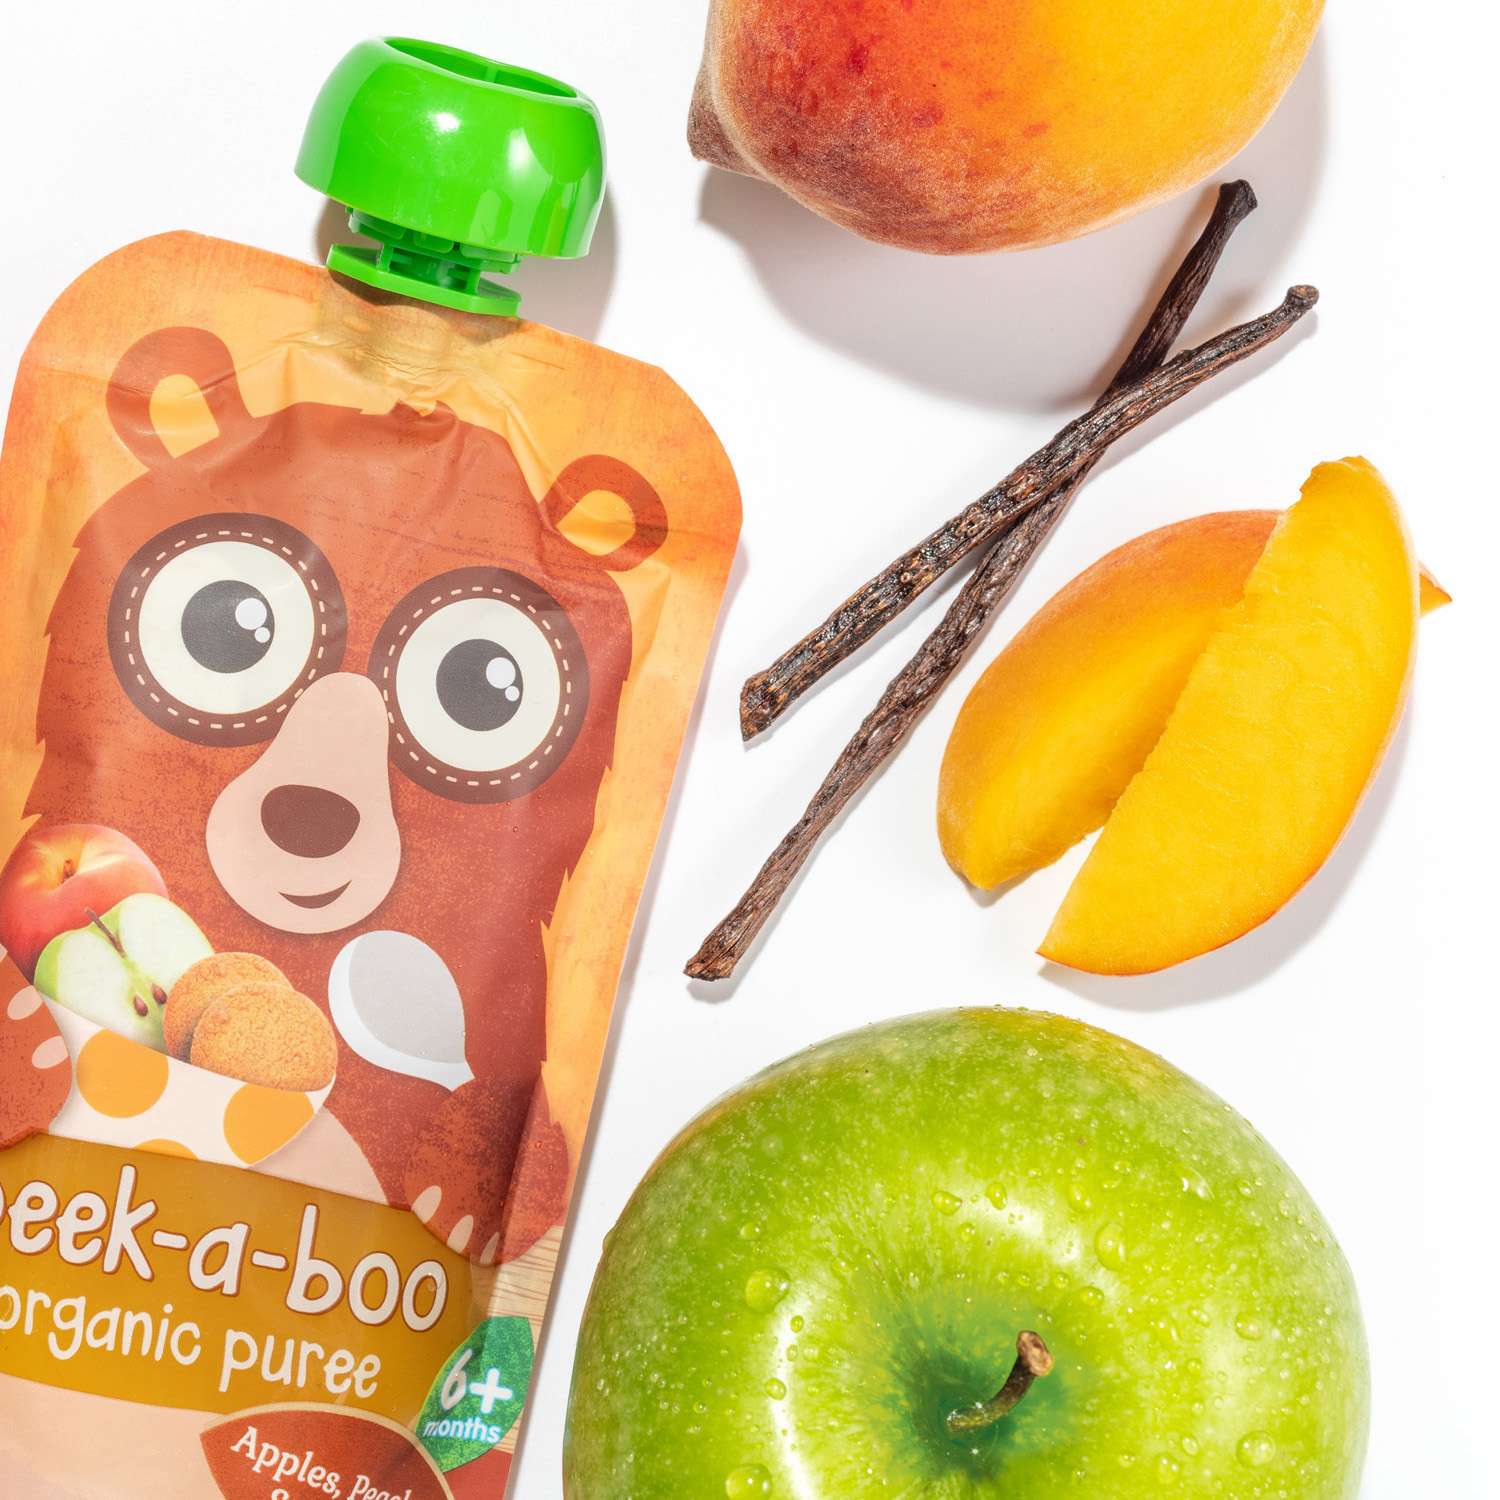 Пюре фруктовое Peek-a-boo органическое из яблок персиков со вкусом печенья пикабу 10 шт - фото 2